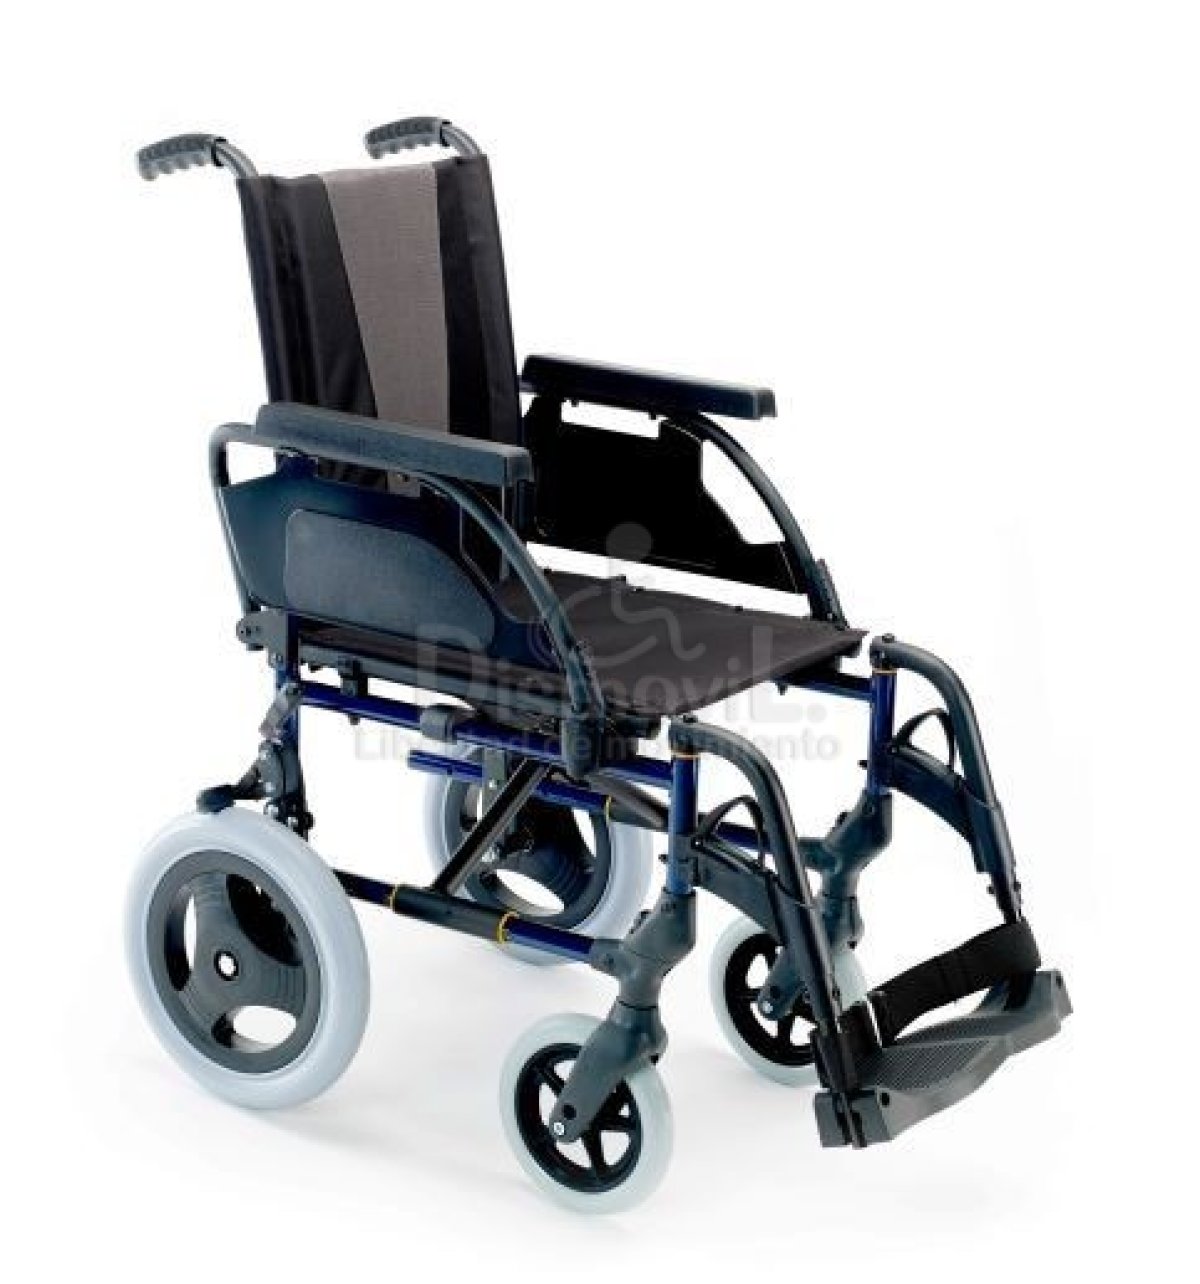 Кресло коляска для инвалида ребенка прогулочная. Инвалидная коляска Breezy Premium ly 250. Breezy 300 инвалидная коляска. Breezy Premium ly-250 (250-PR/49), ширина сиденья 49 см. Кресло-коляска инвалидная складная ly-250 (250-031a),.